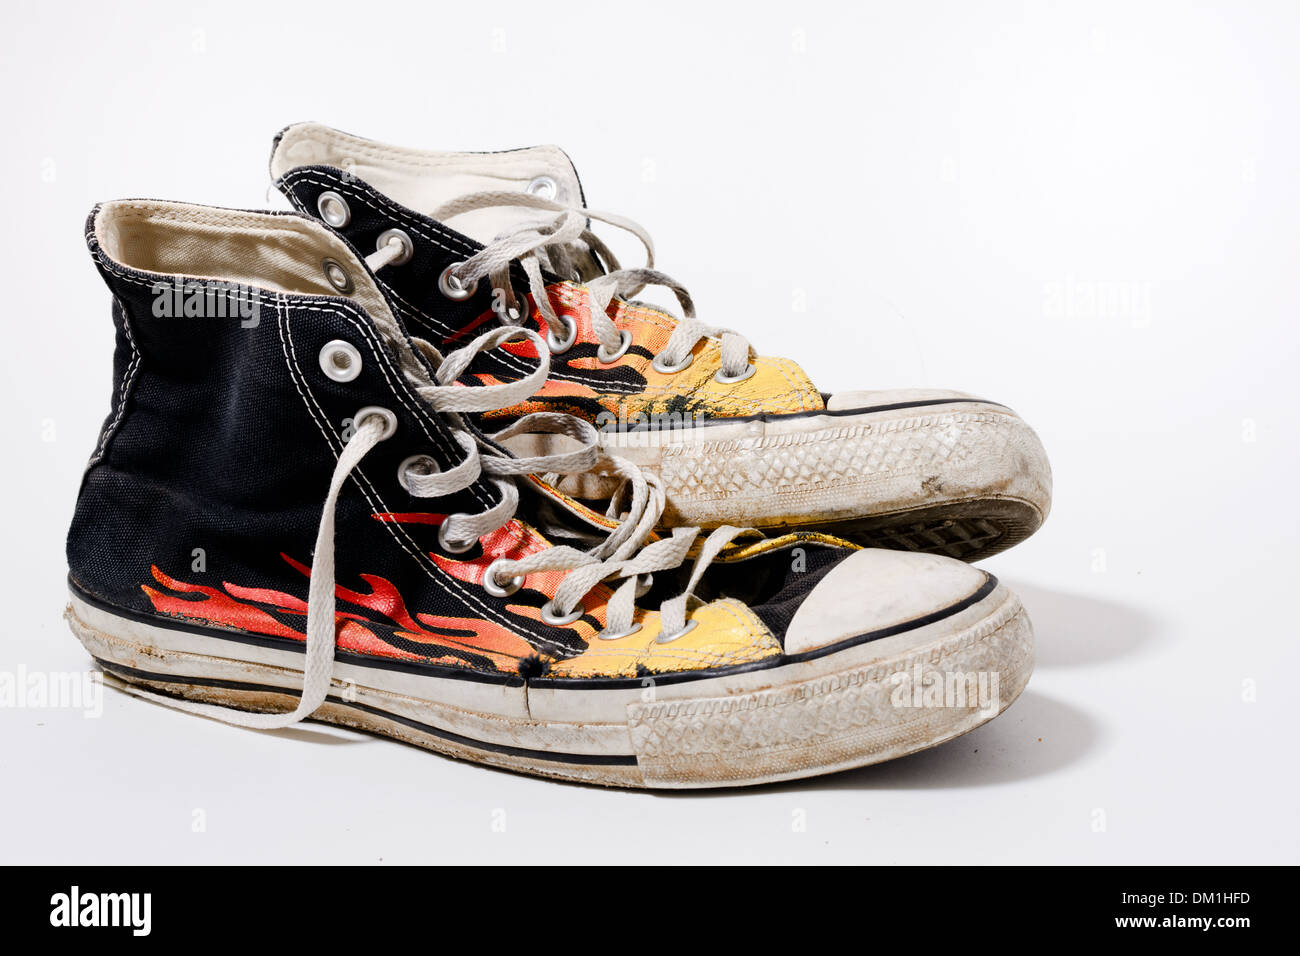 Desgastada y sucia Converse shoes aislado sobre fondo blanco Fotografía de stock -